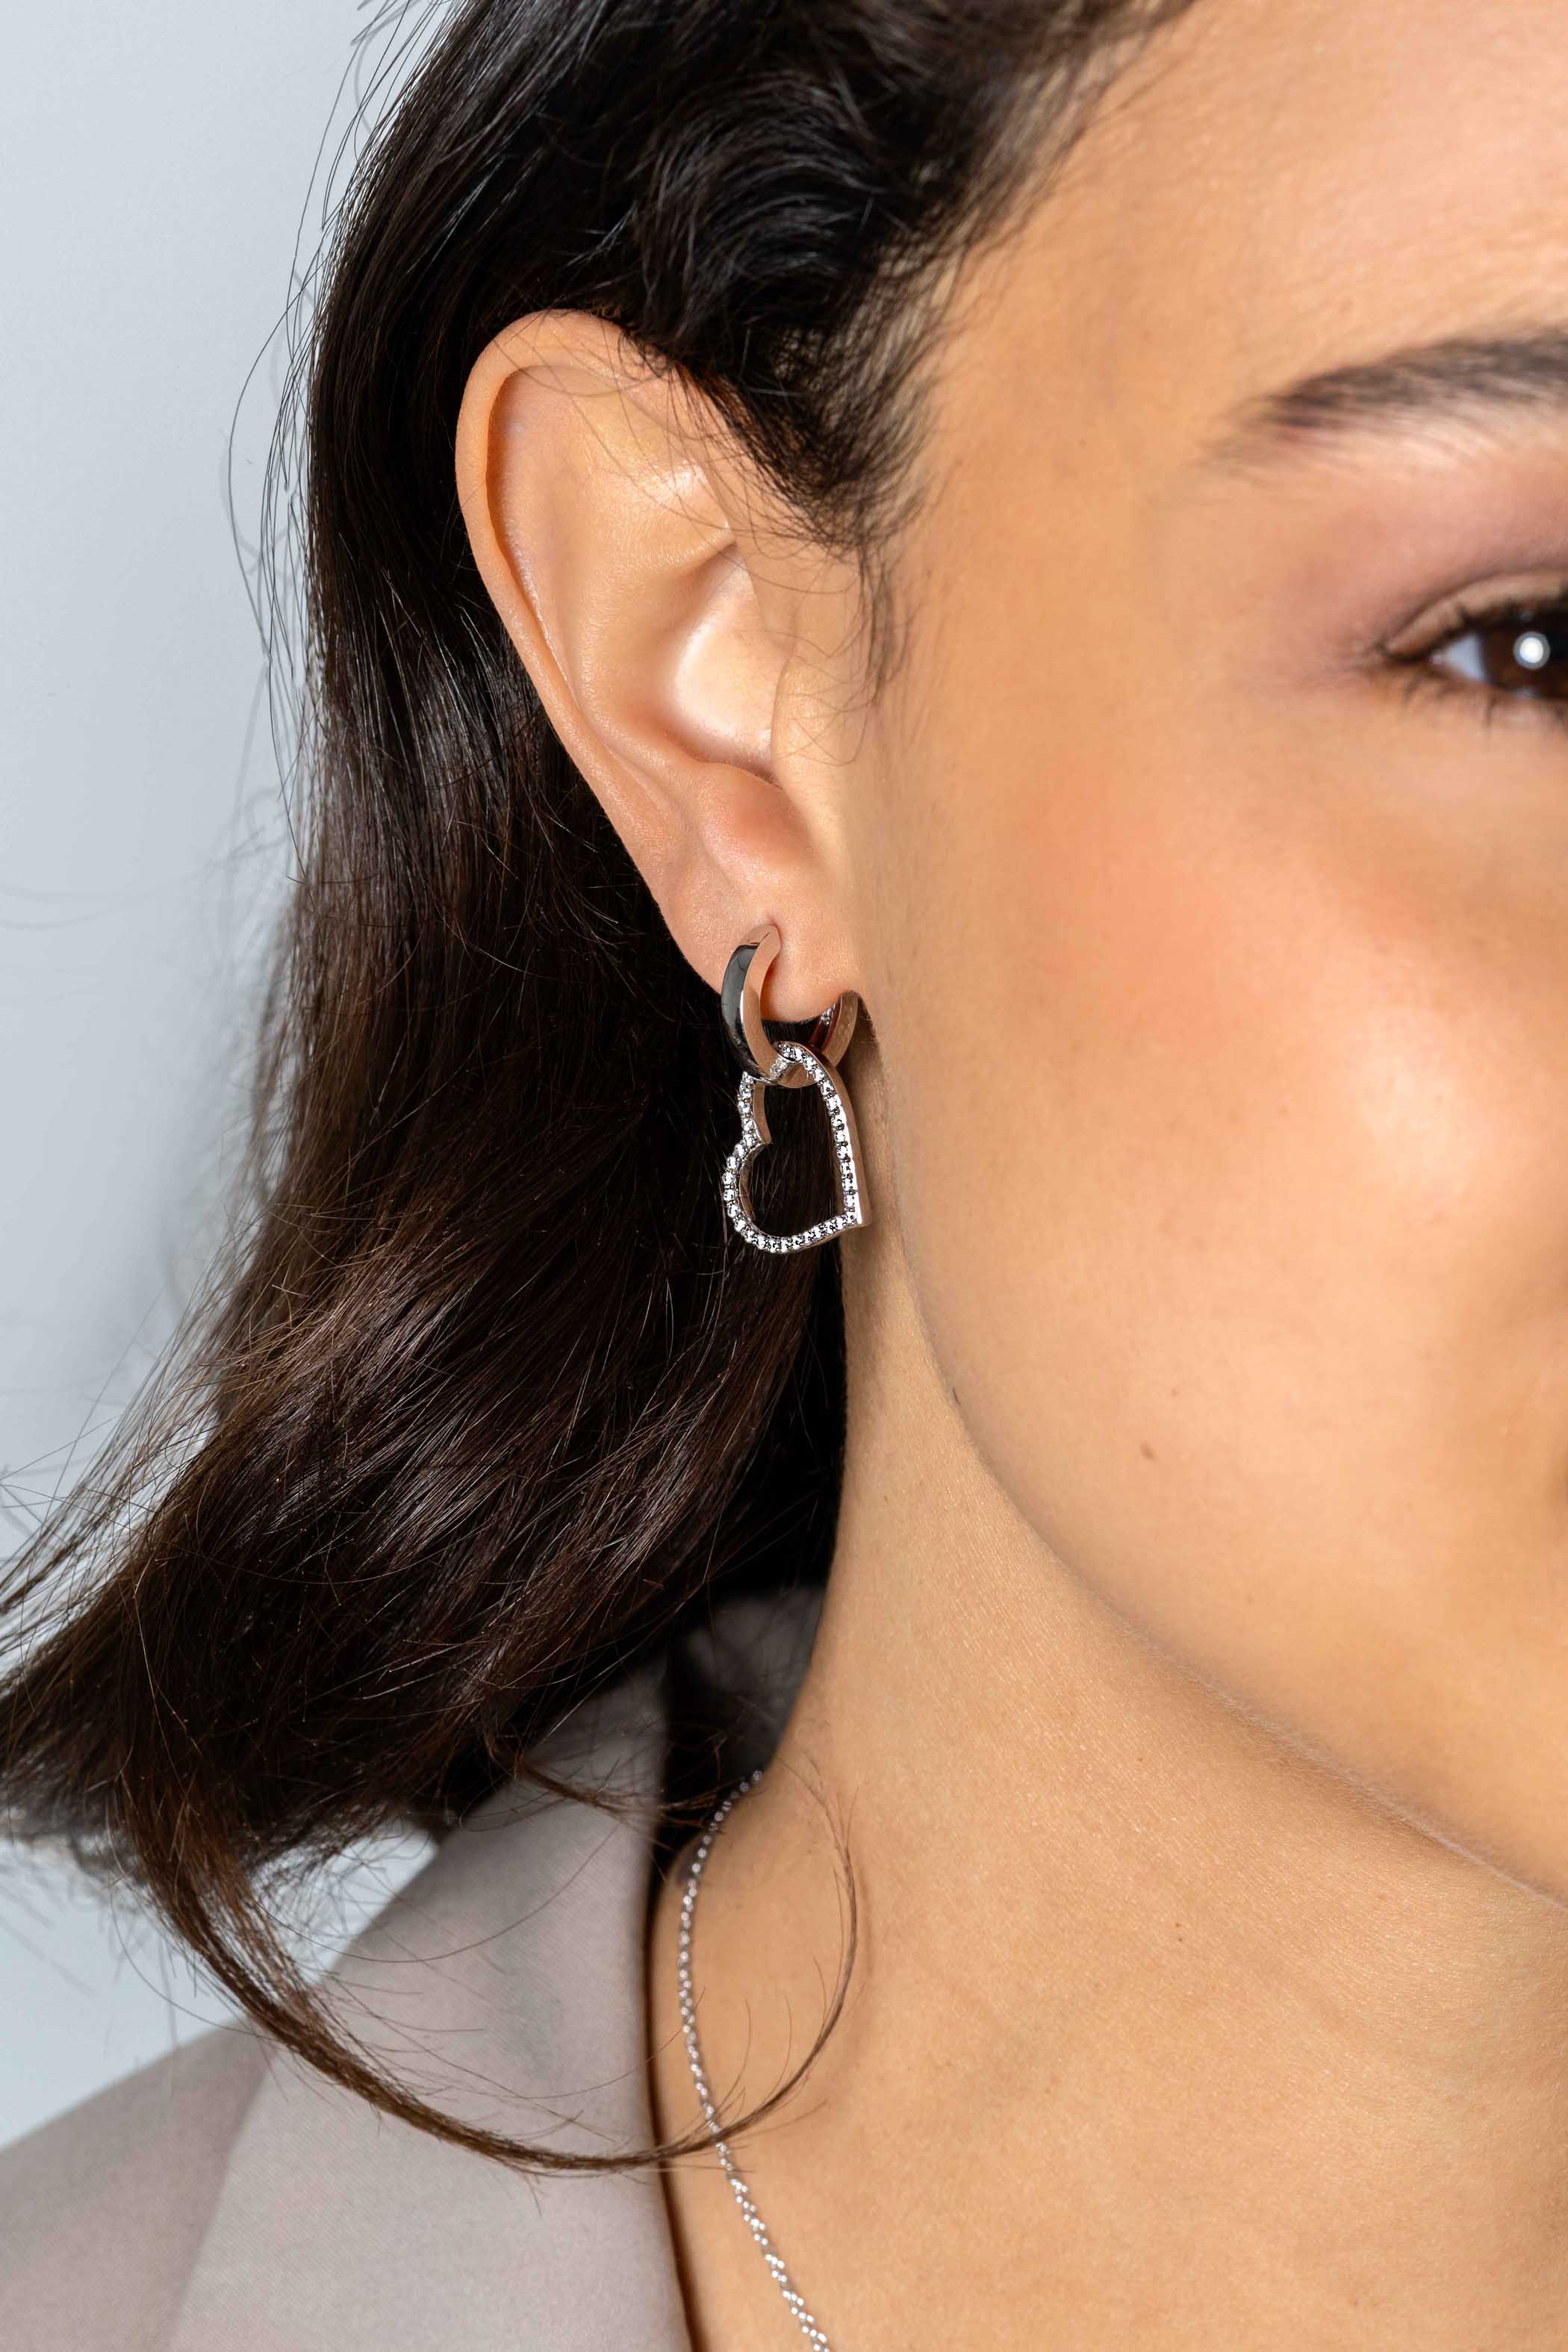 19mm ZINZI Sterling Silver Earrings Pendants Open Hearts with White Zirconias ZICH2447 (excl. hoop earrings)